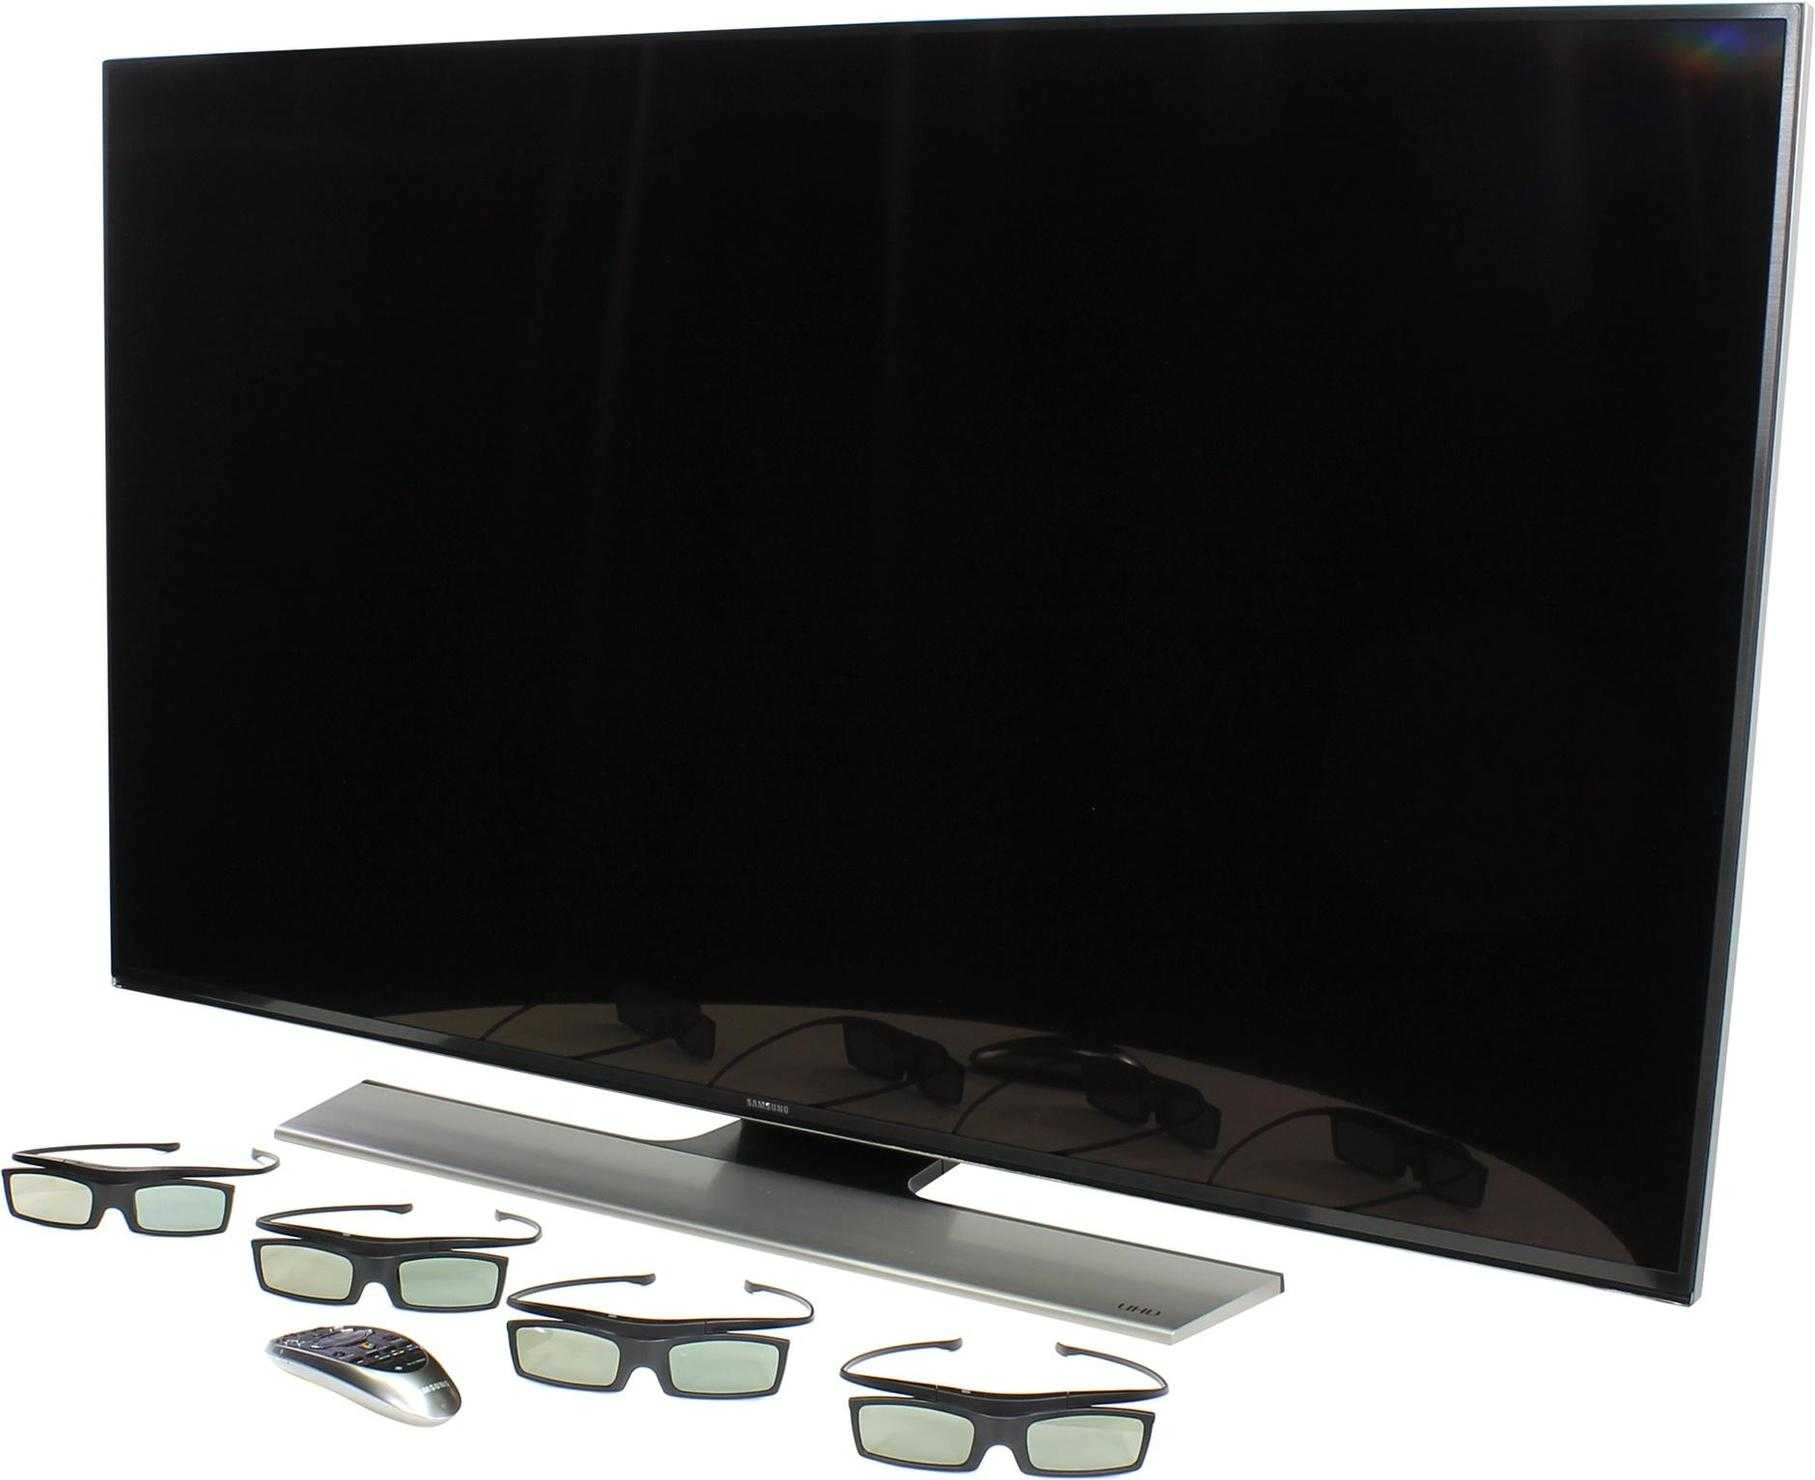 Samsung ue55hu8500 - купить , скидки, цена, отзывы, обзор, характеристики - телевизоры